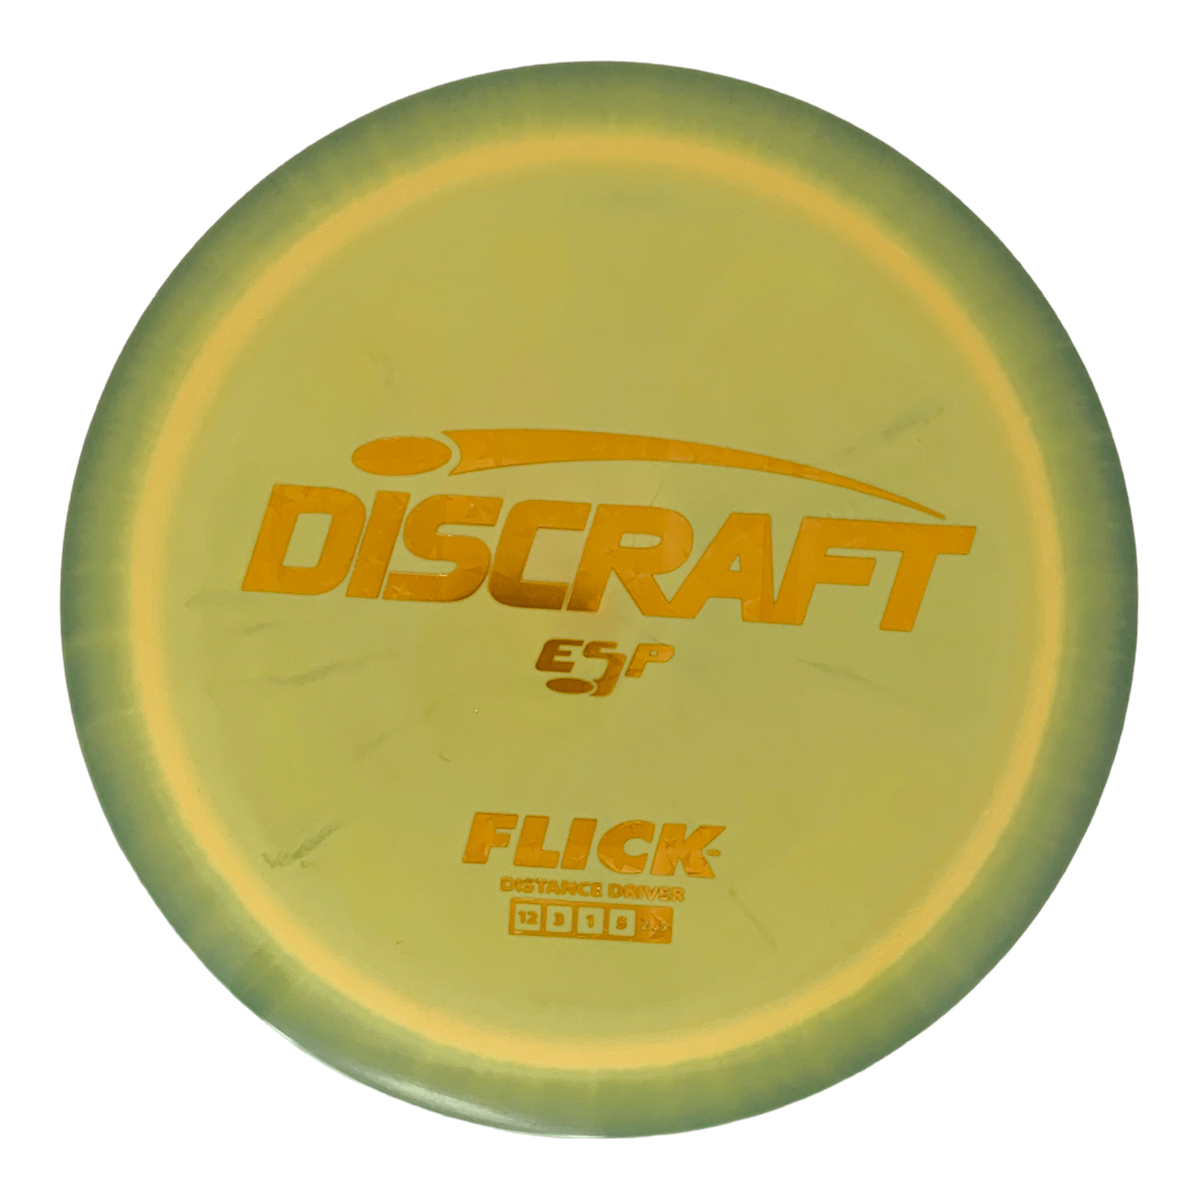 Discraft ESP Flick